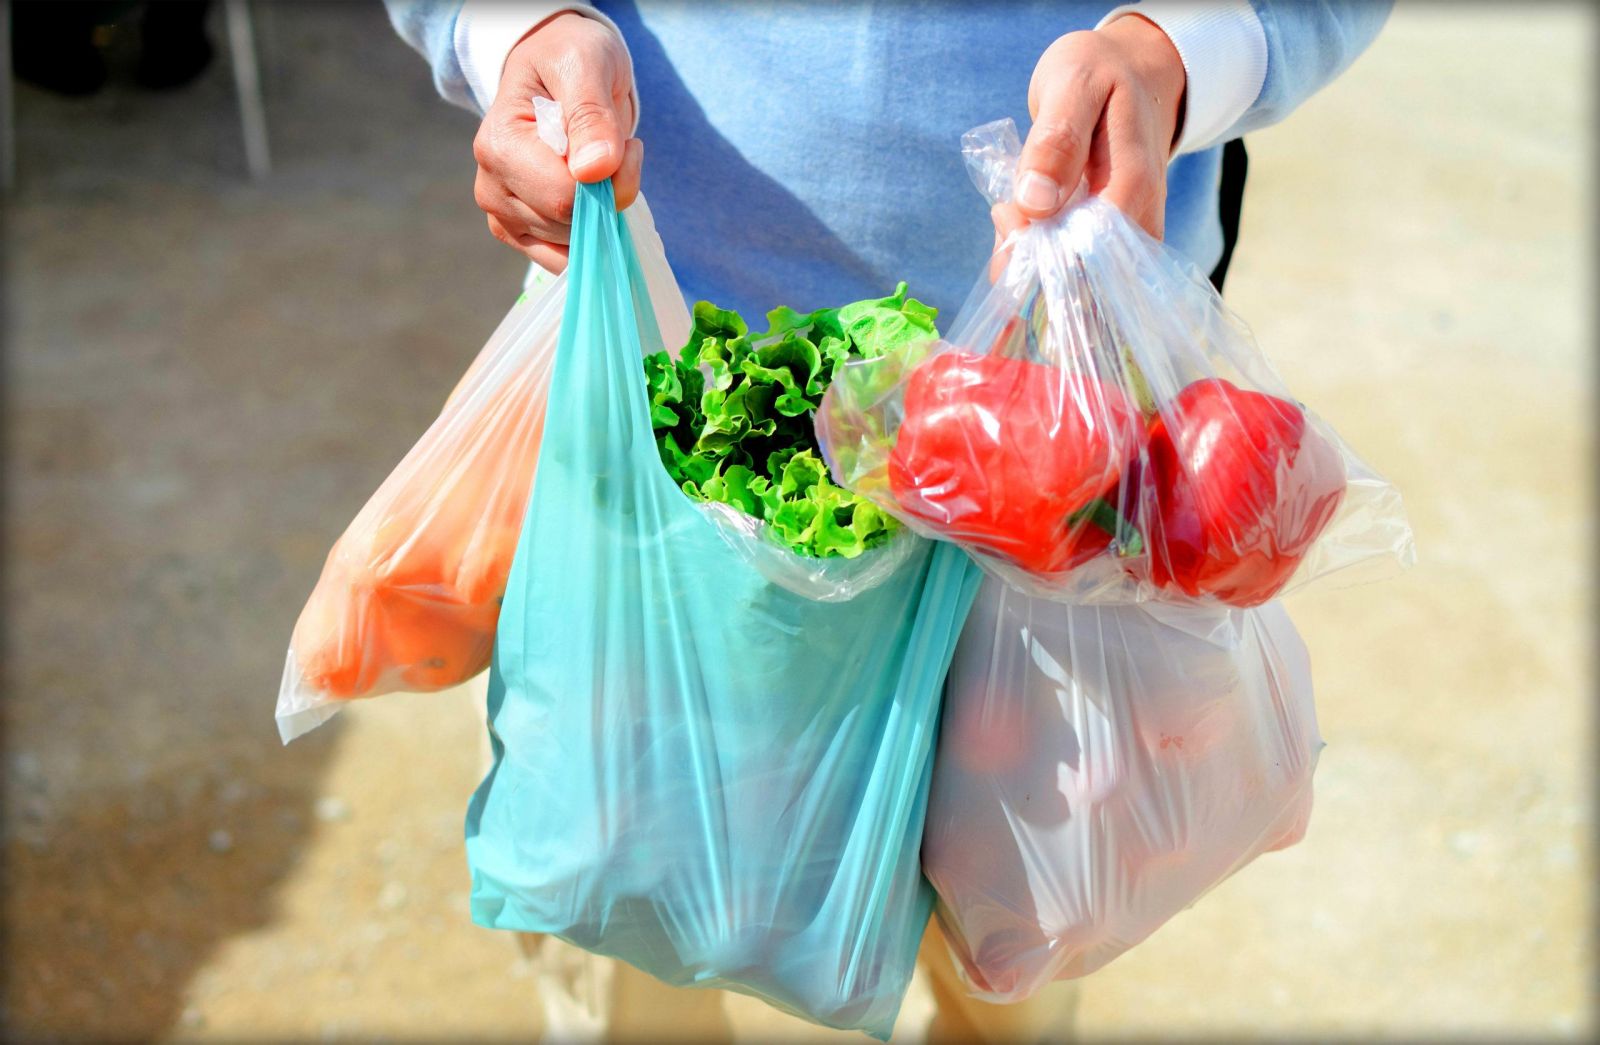 С завтрашнего дня пластиковые пакеты в магазинах не могут стоить меньше двух гривен